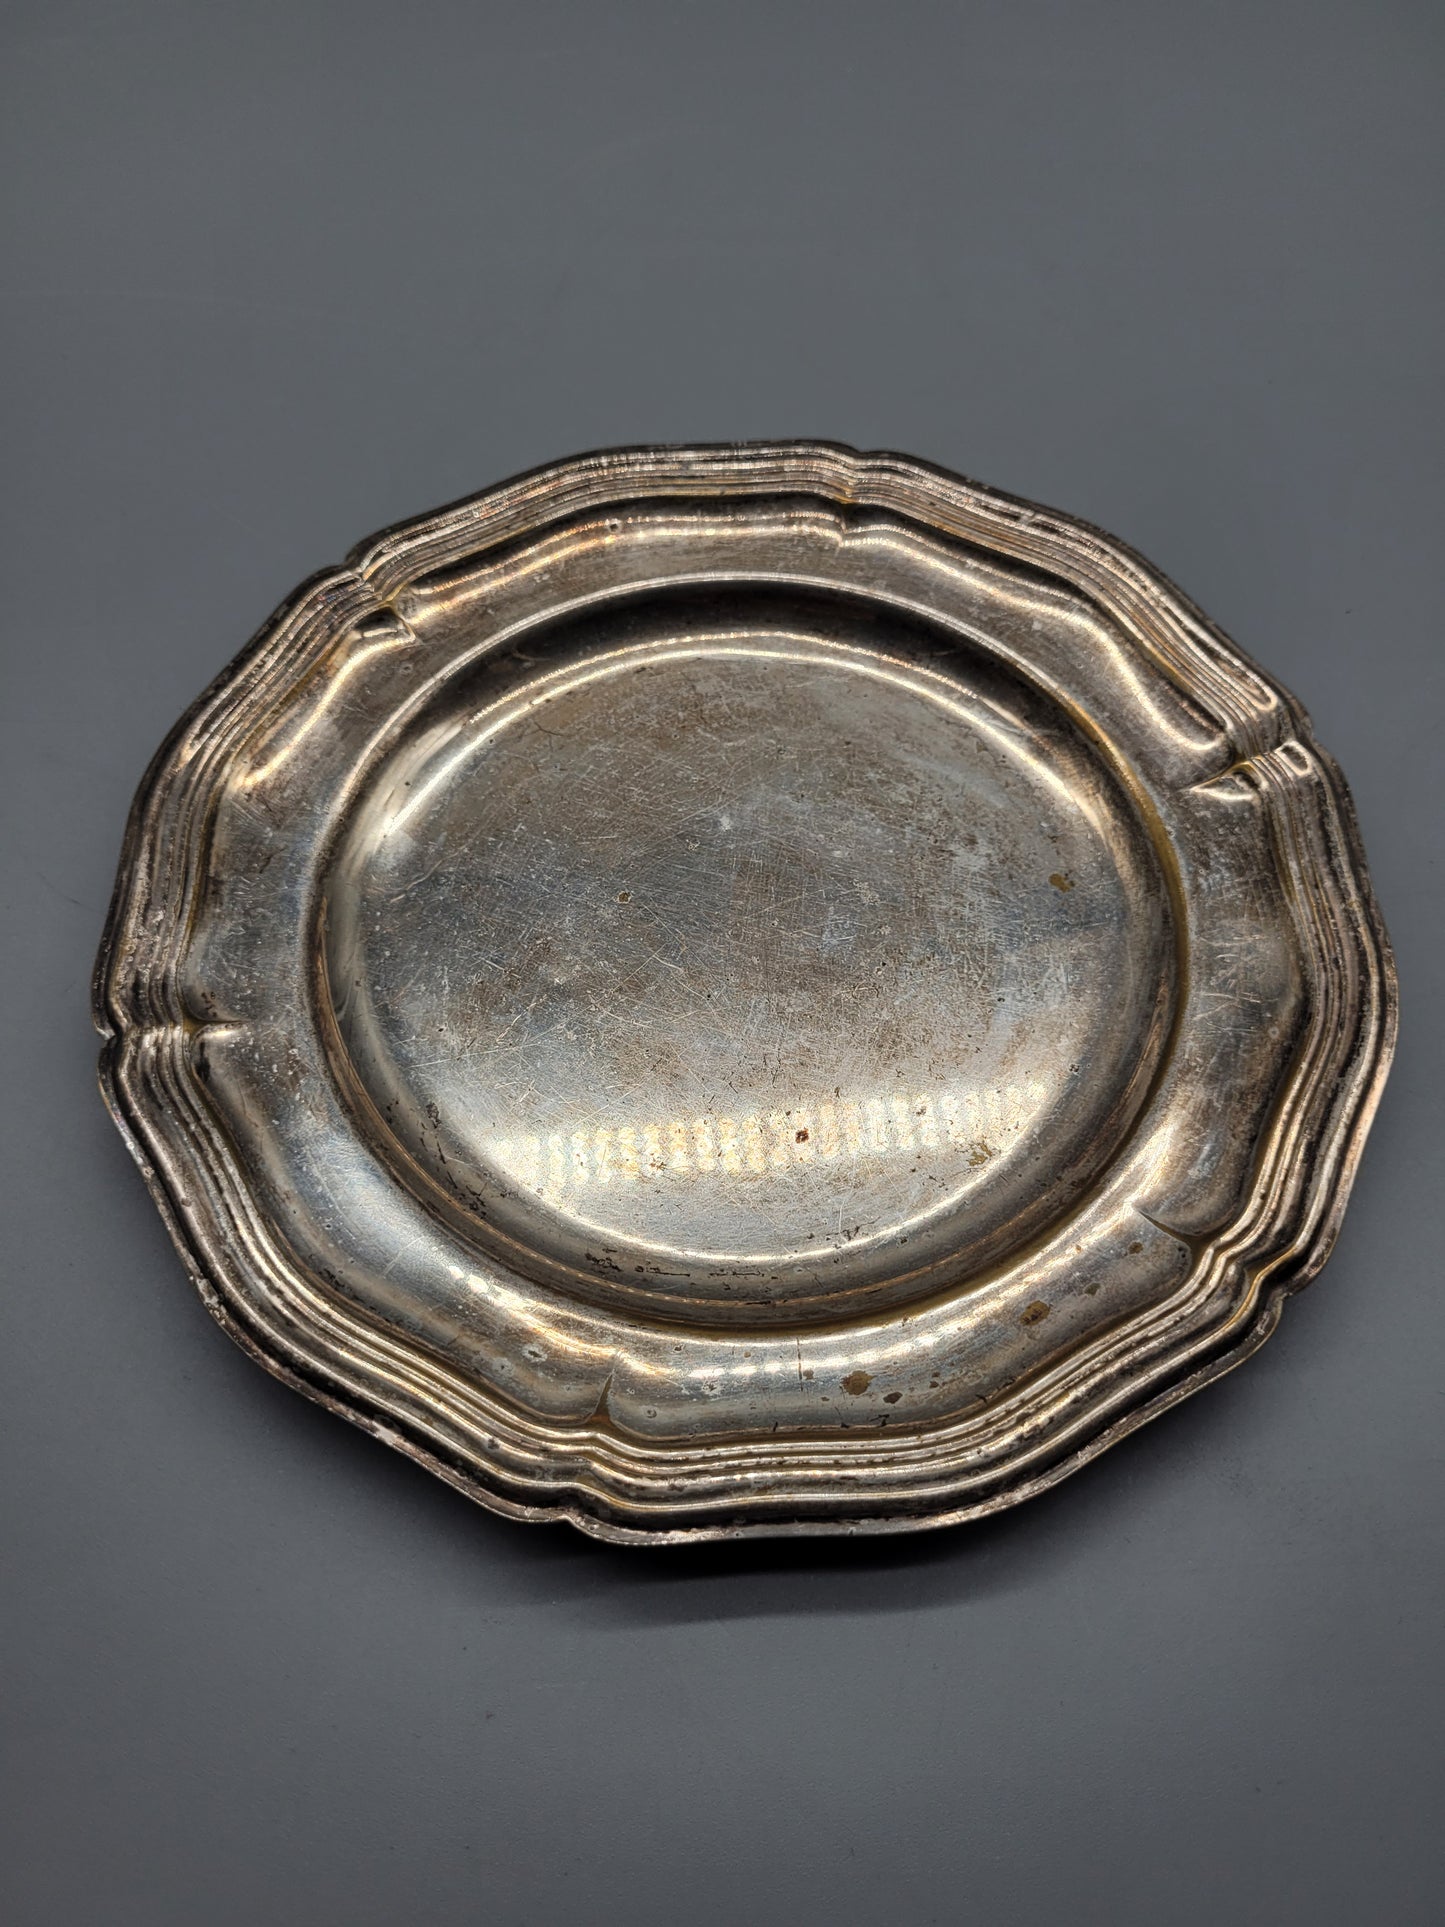 Geschwungener Antiker Silber Teller, Versilbert Silber Plated